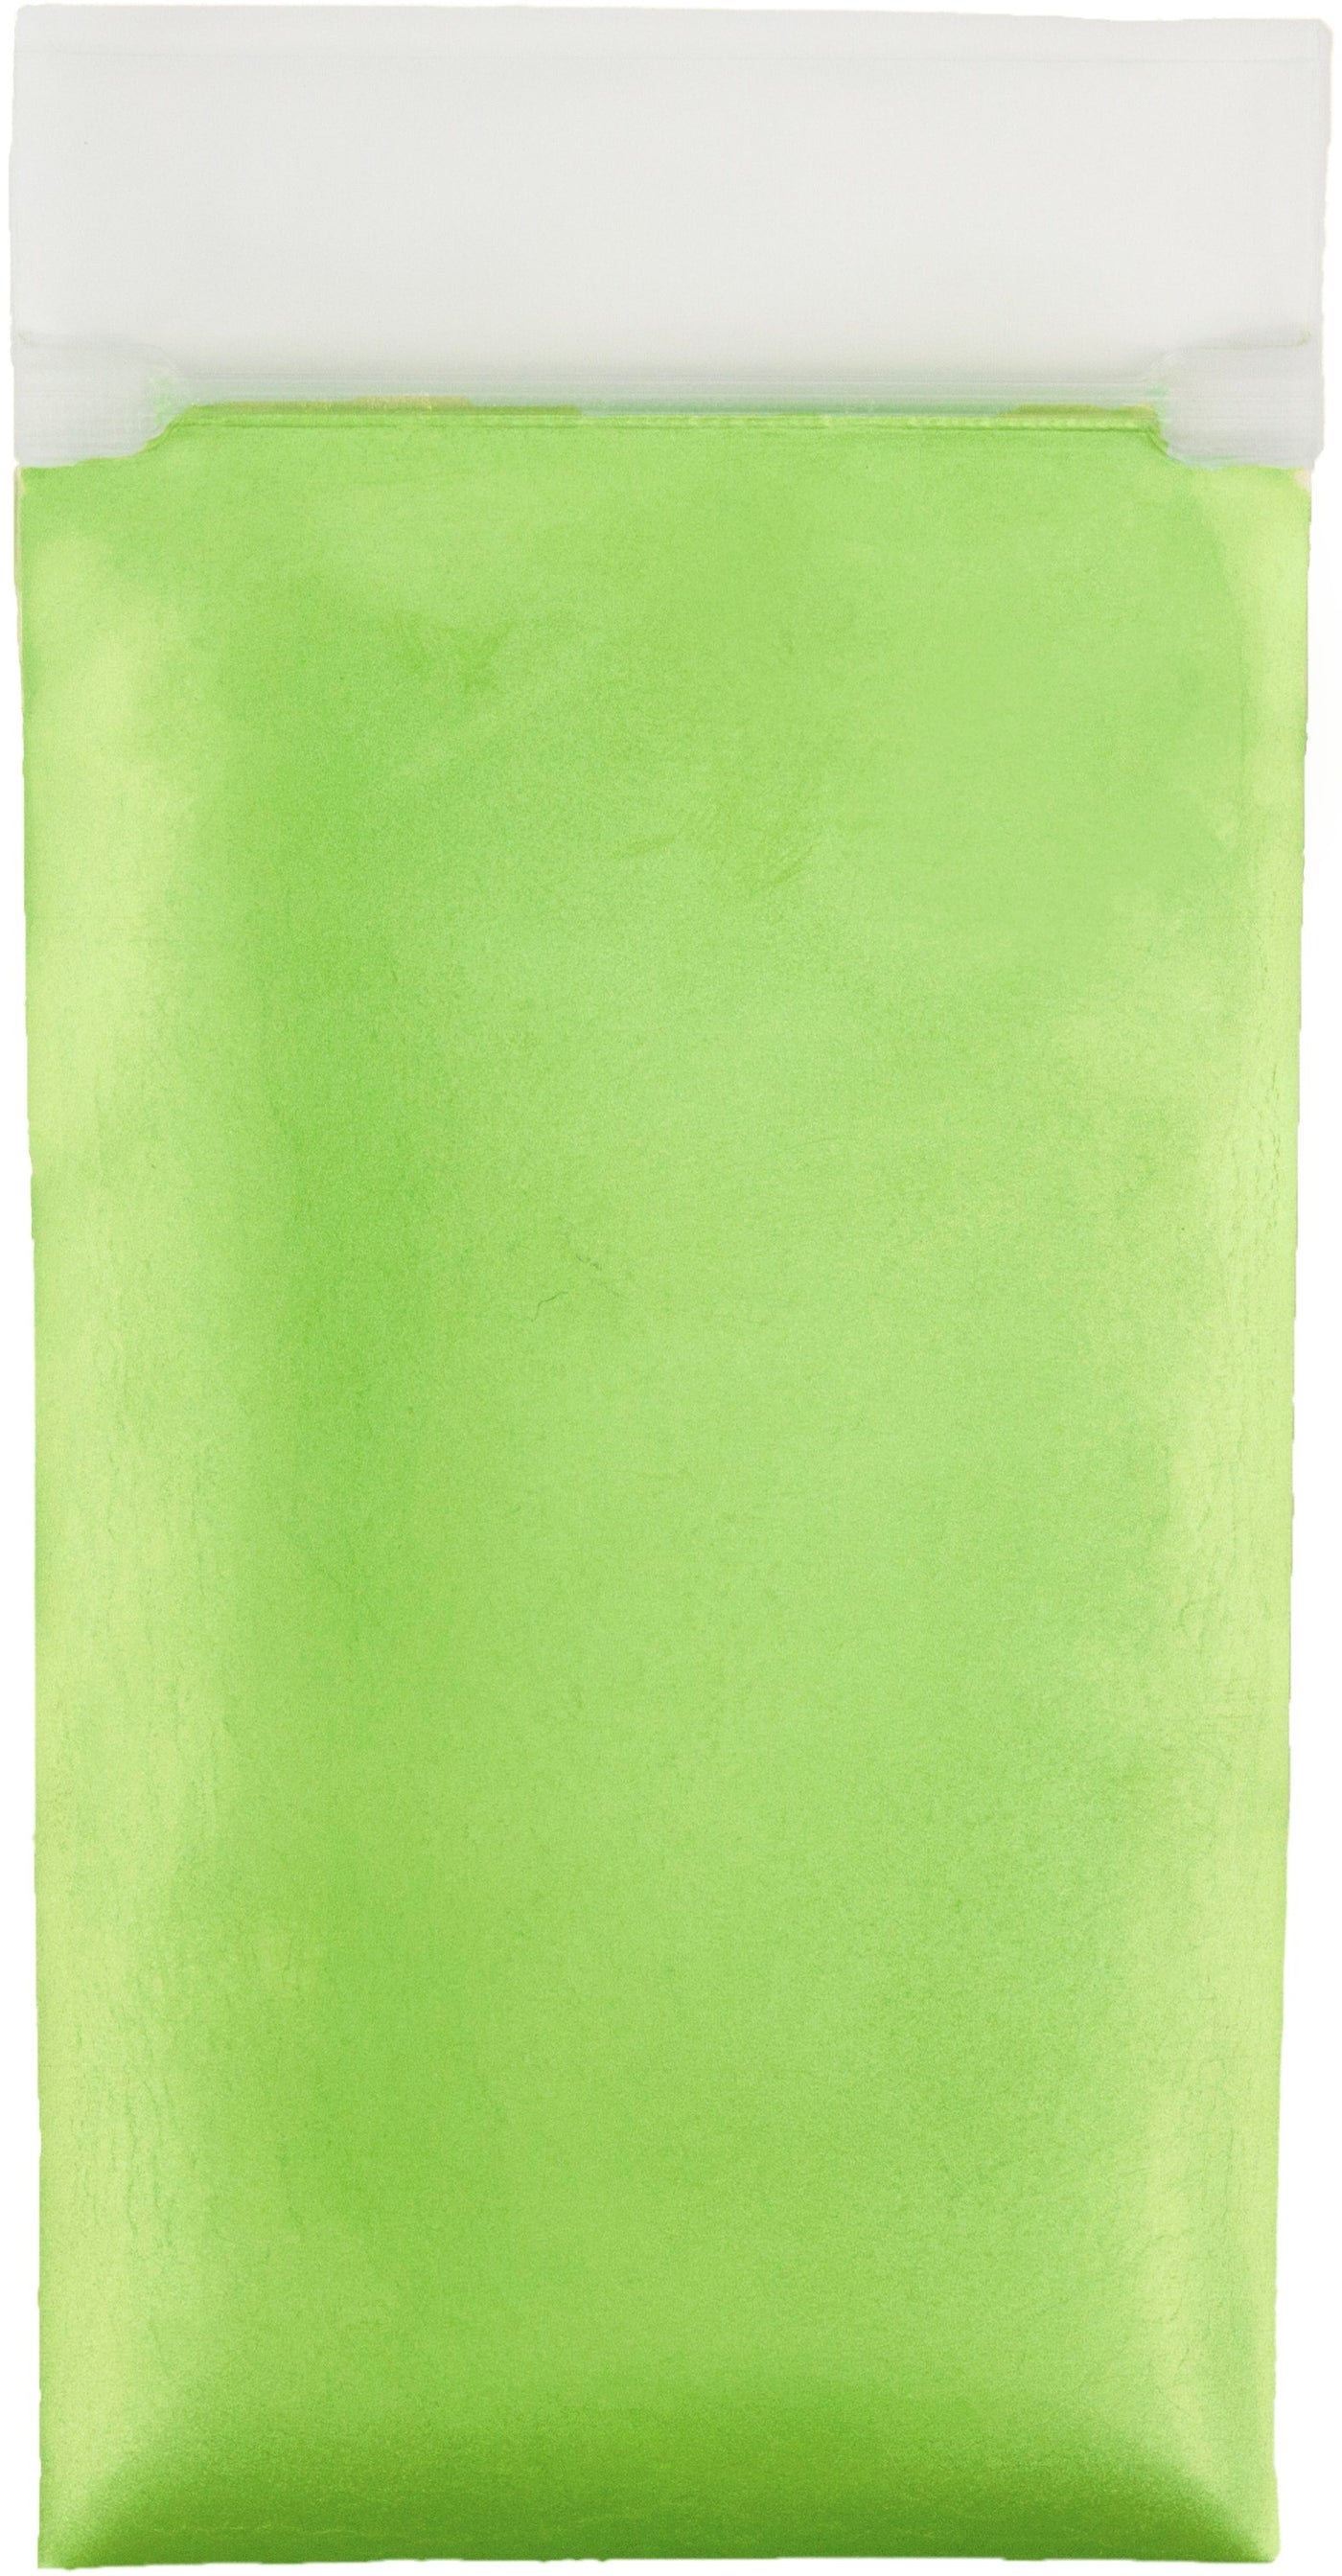 Apple Green Pearl Pigment - 25 Grams